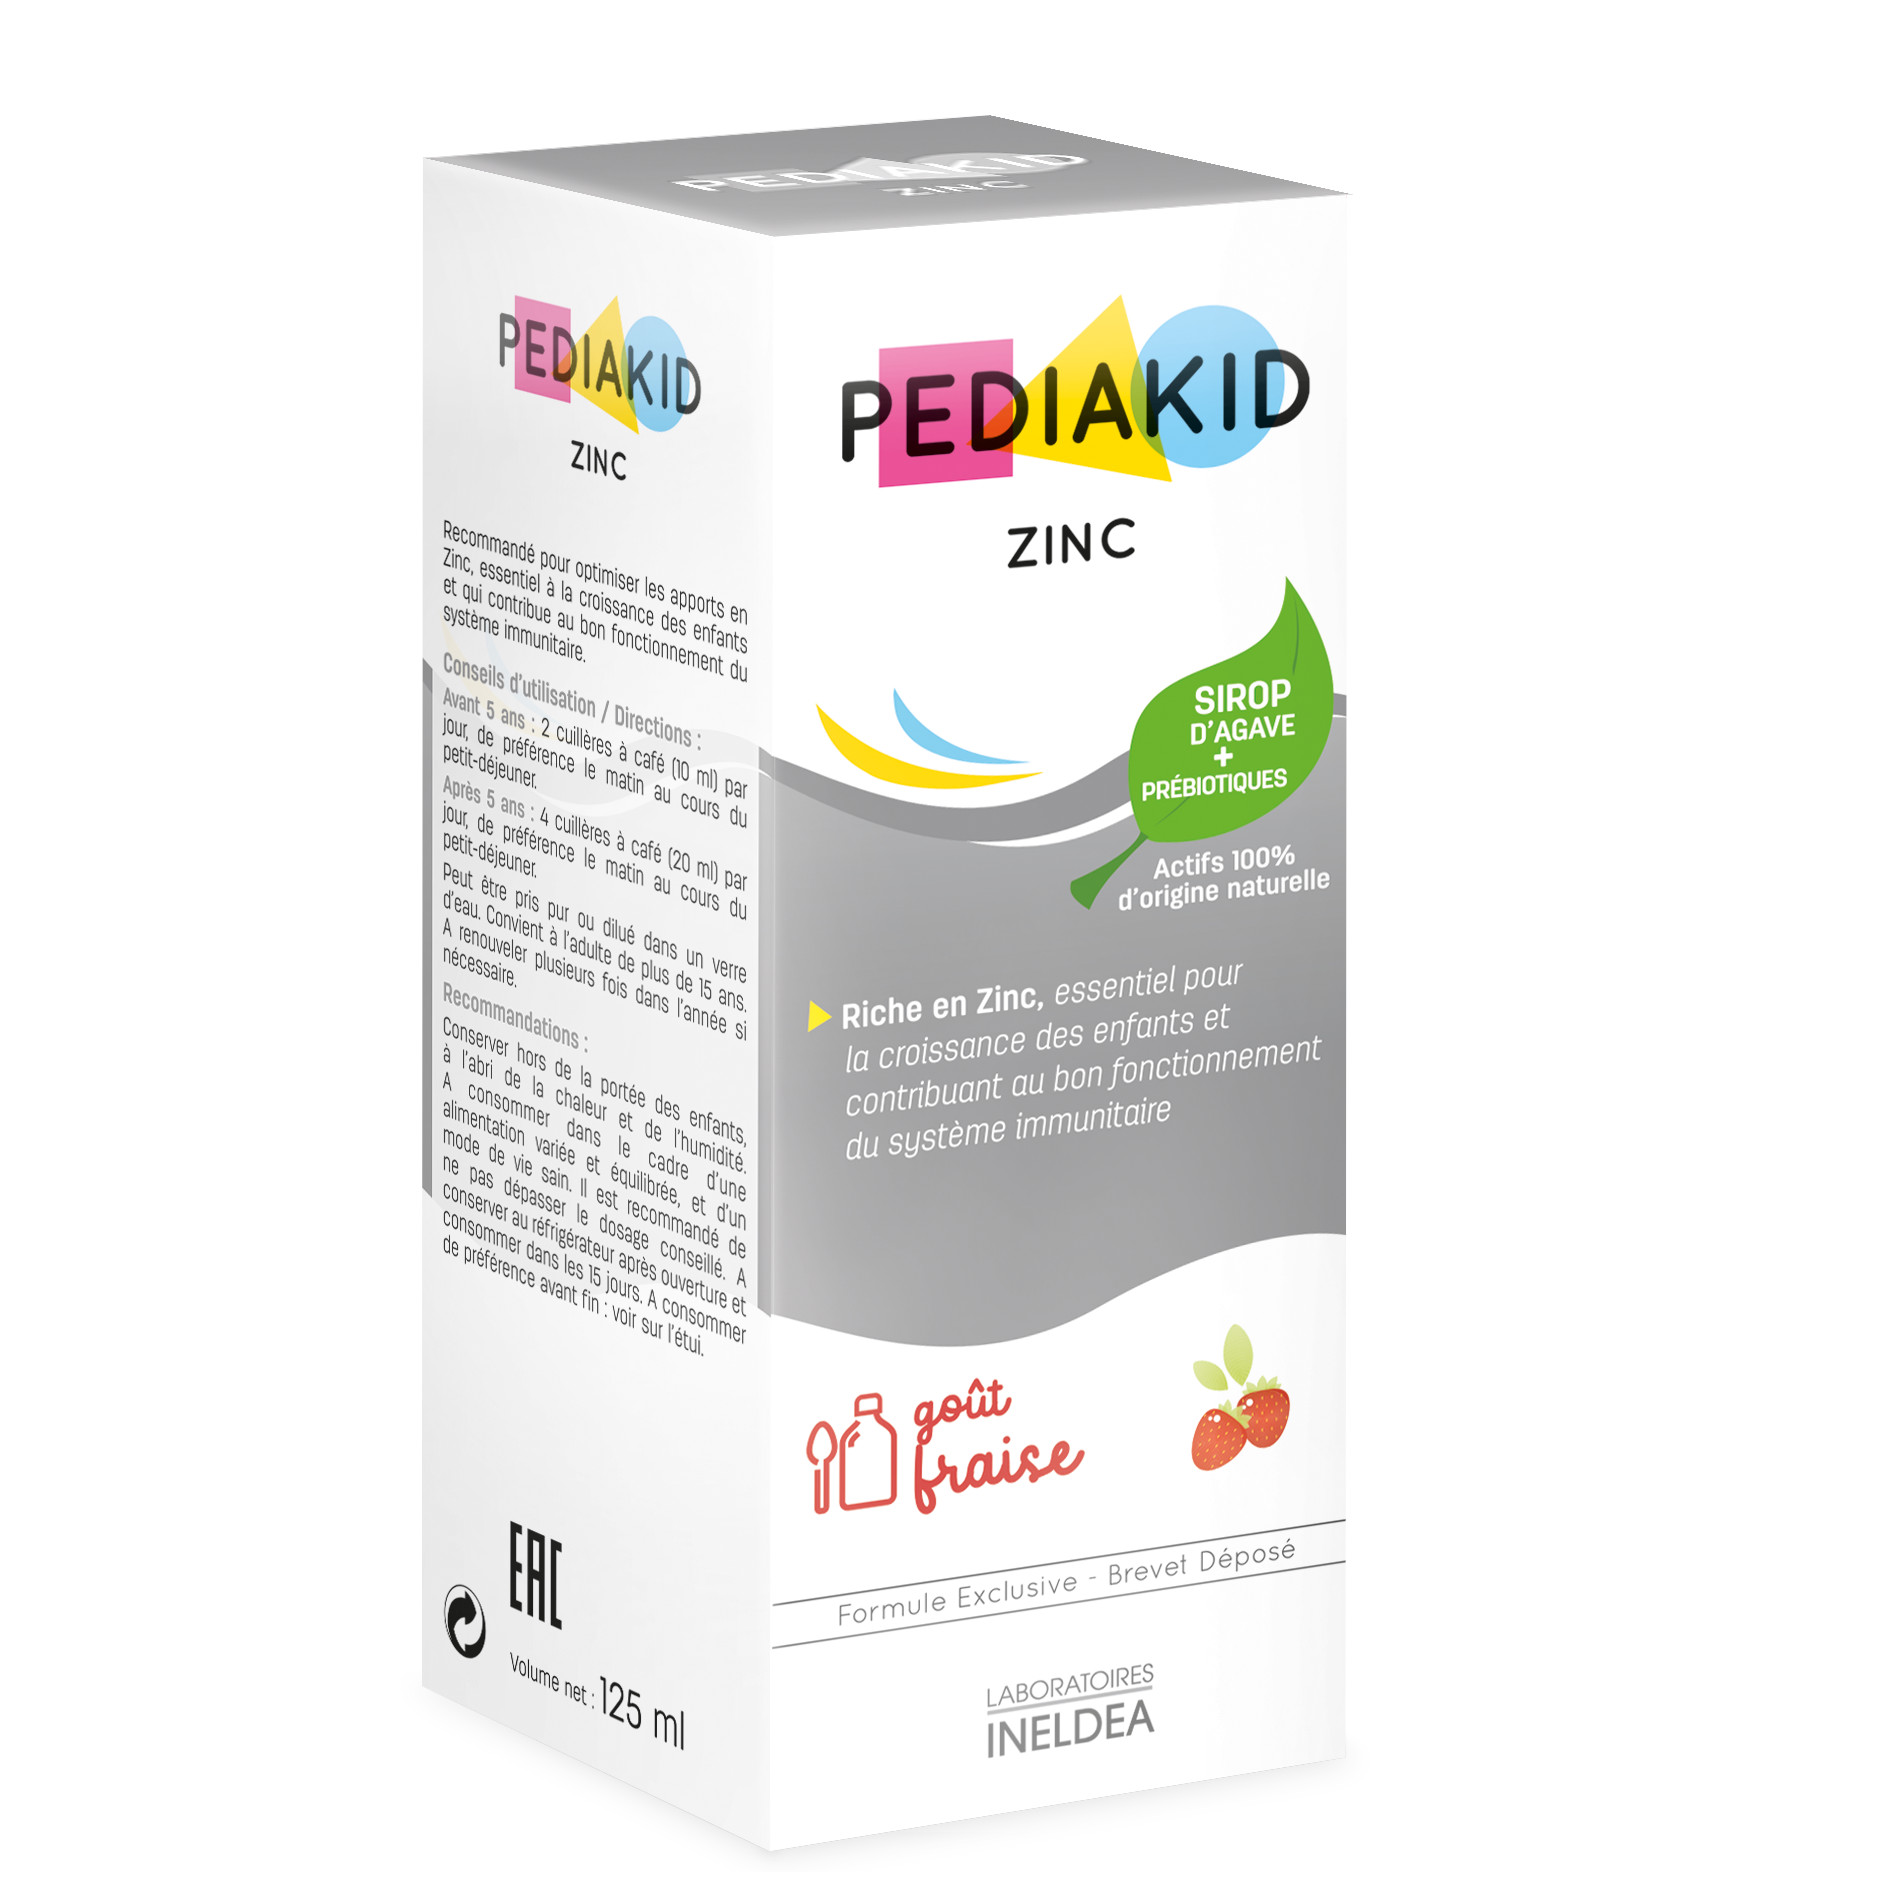 Pediakid vitamin. Витамины для детей Pediakid. Унитекс Педиакид. Педиакид 22 витамина. Педиакид цинк для детей.